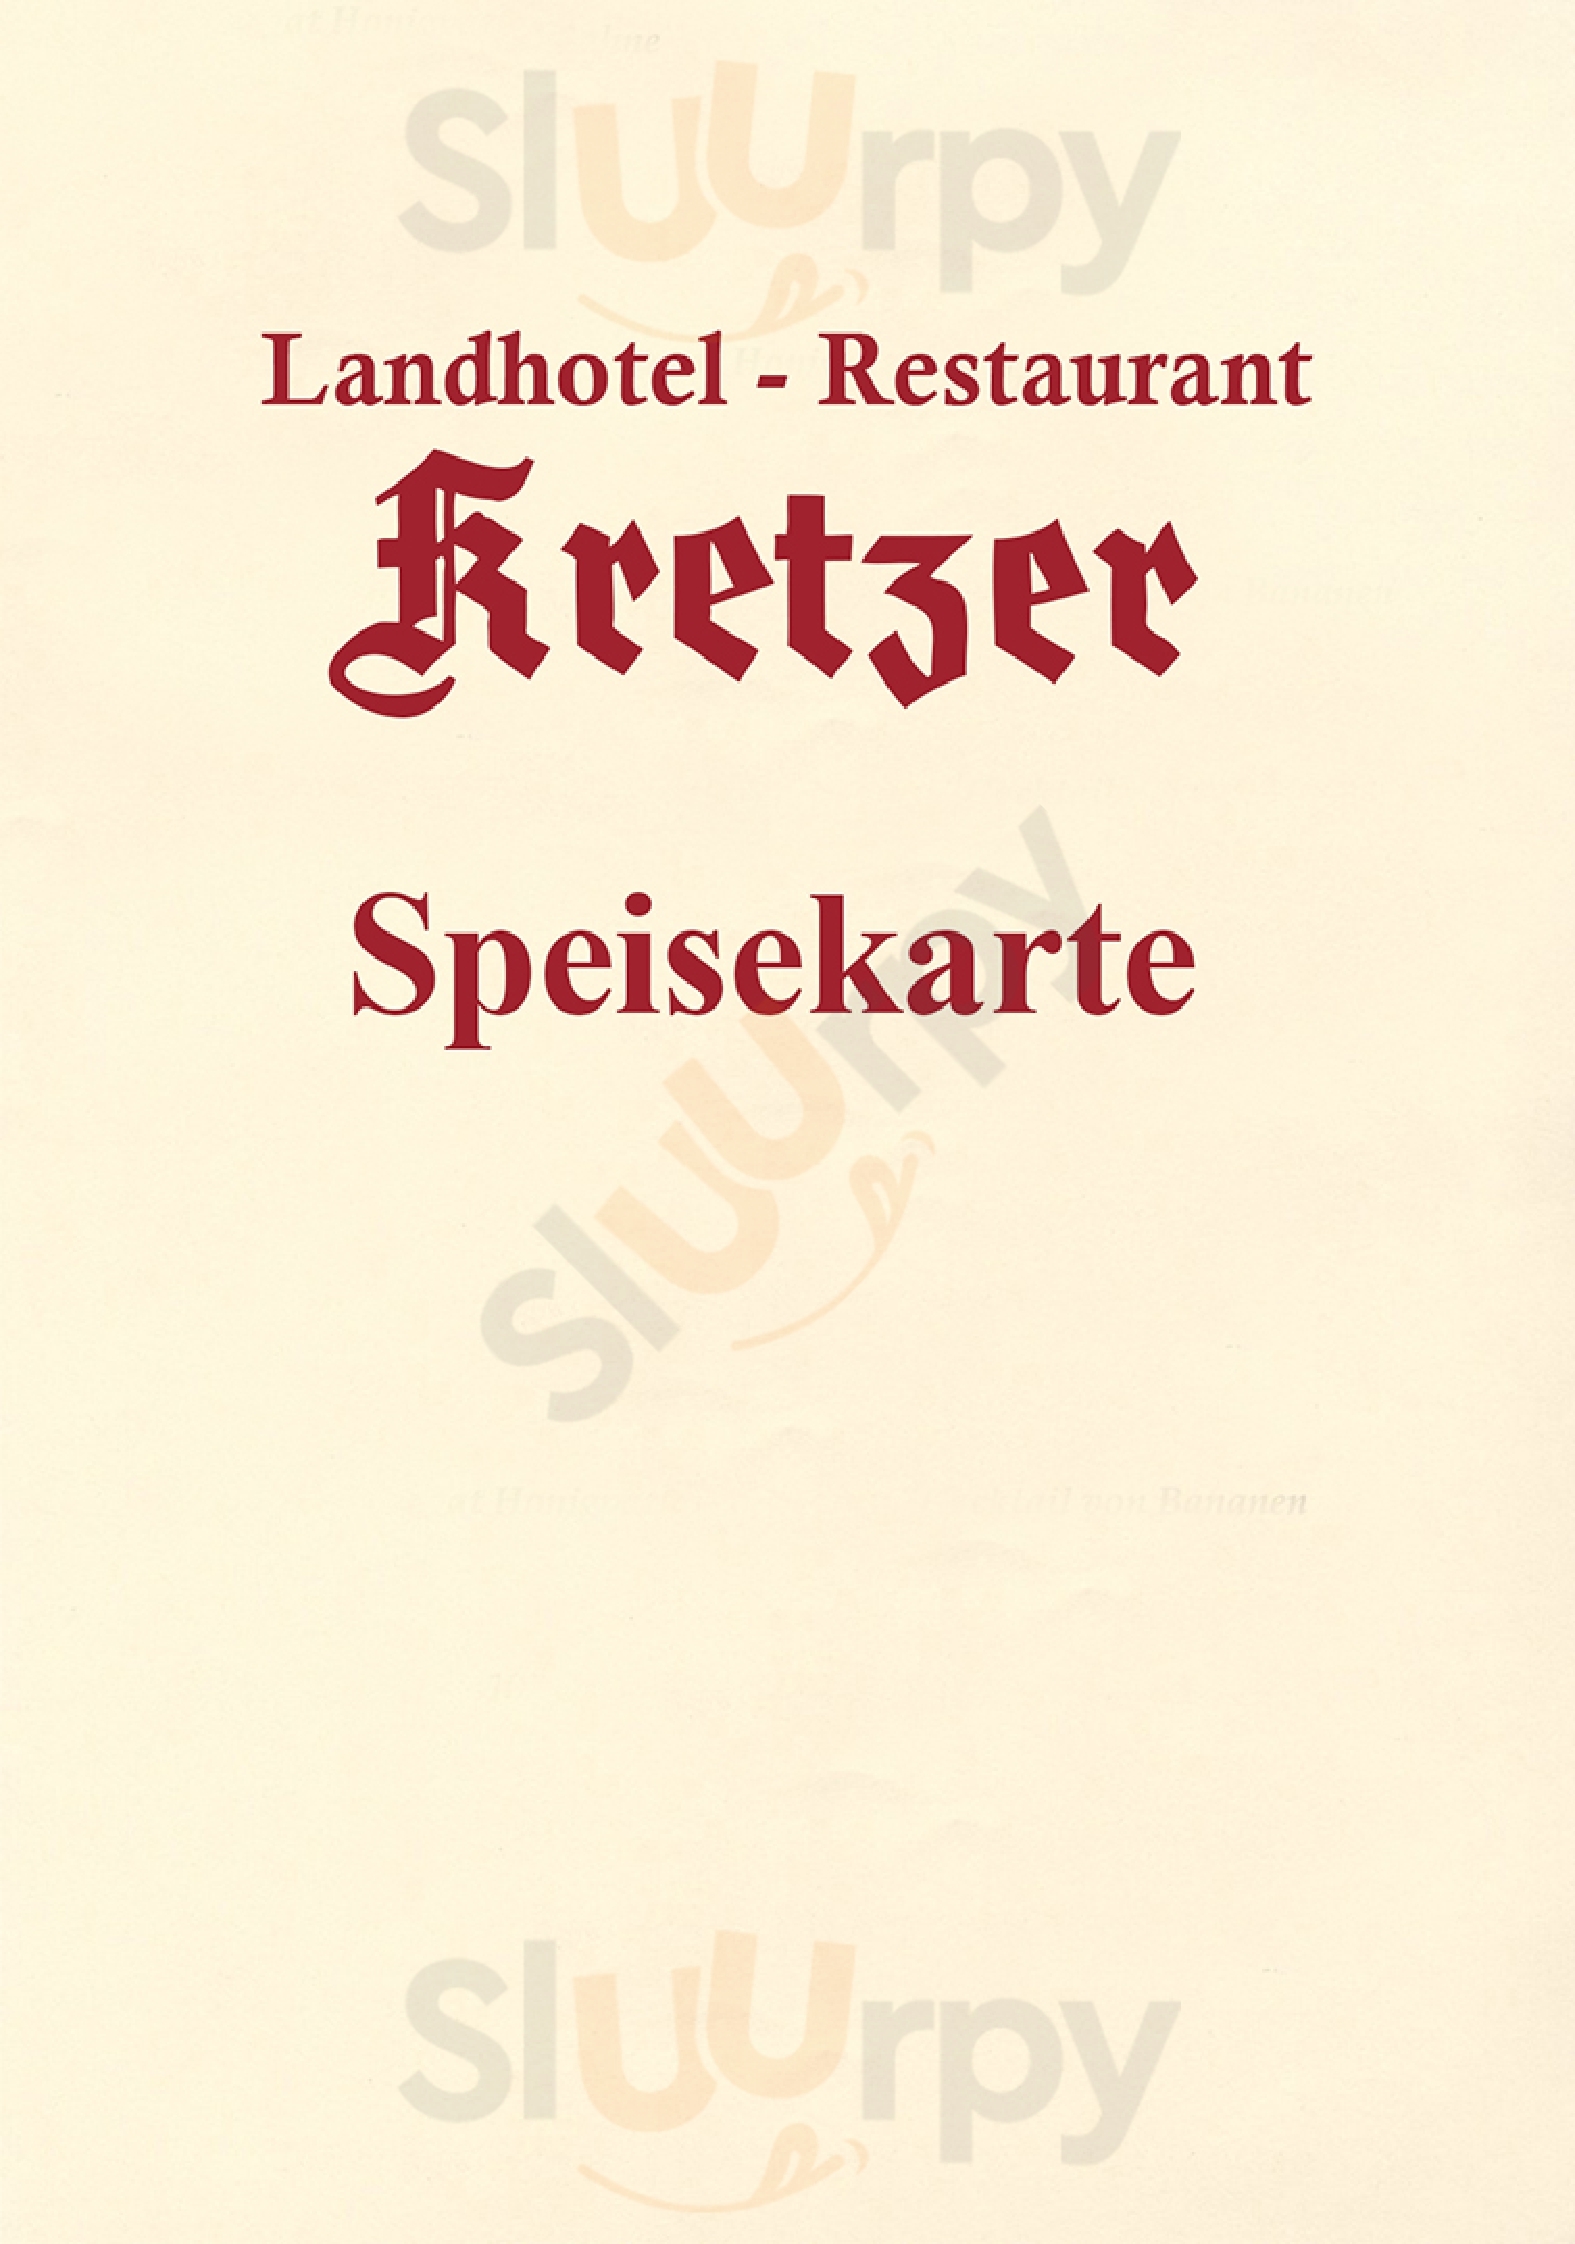 Restaurant Kretzer Büren Menu - 1